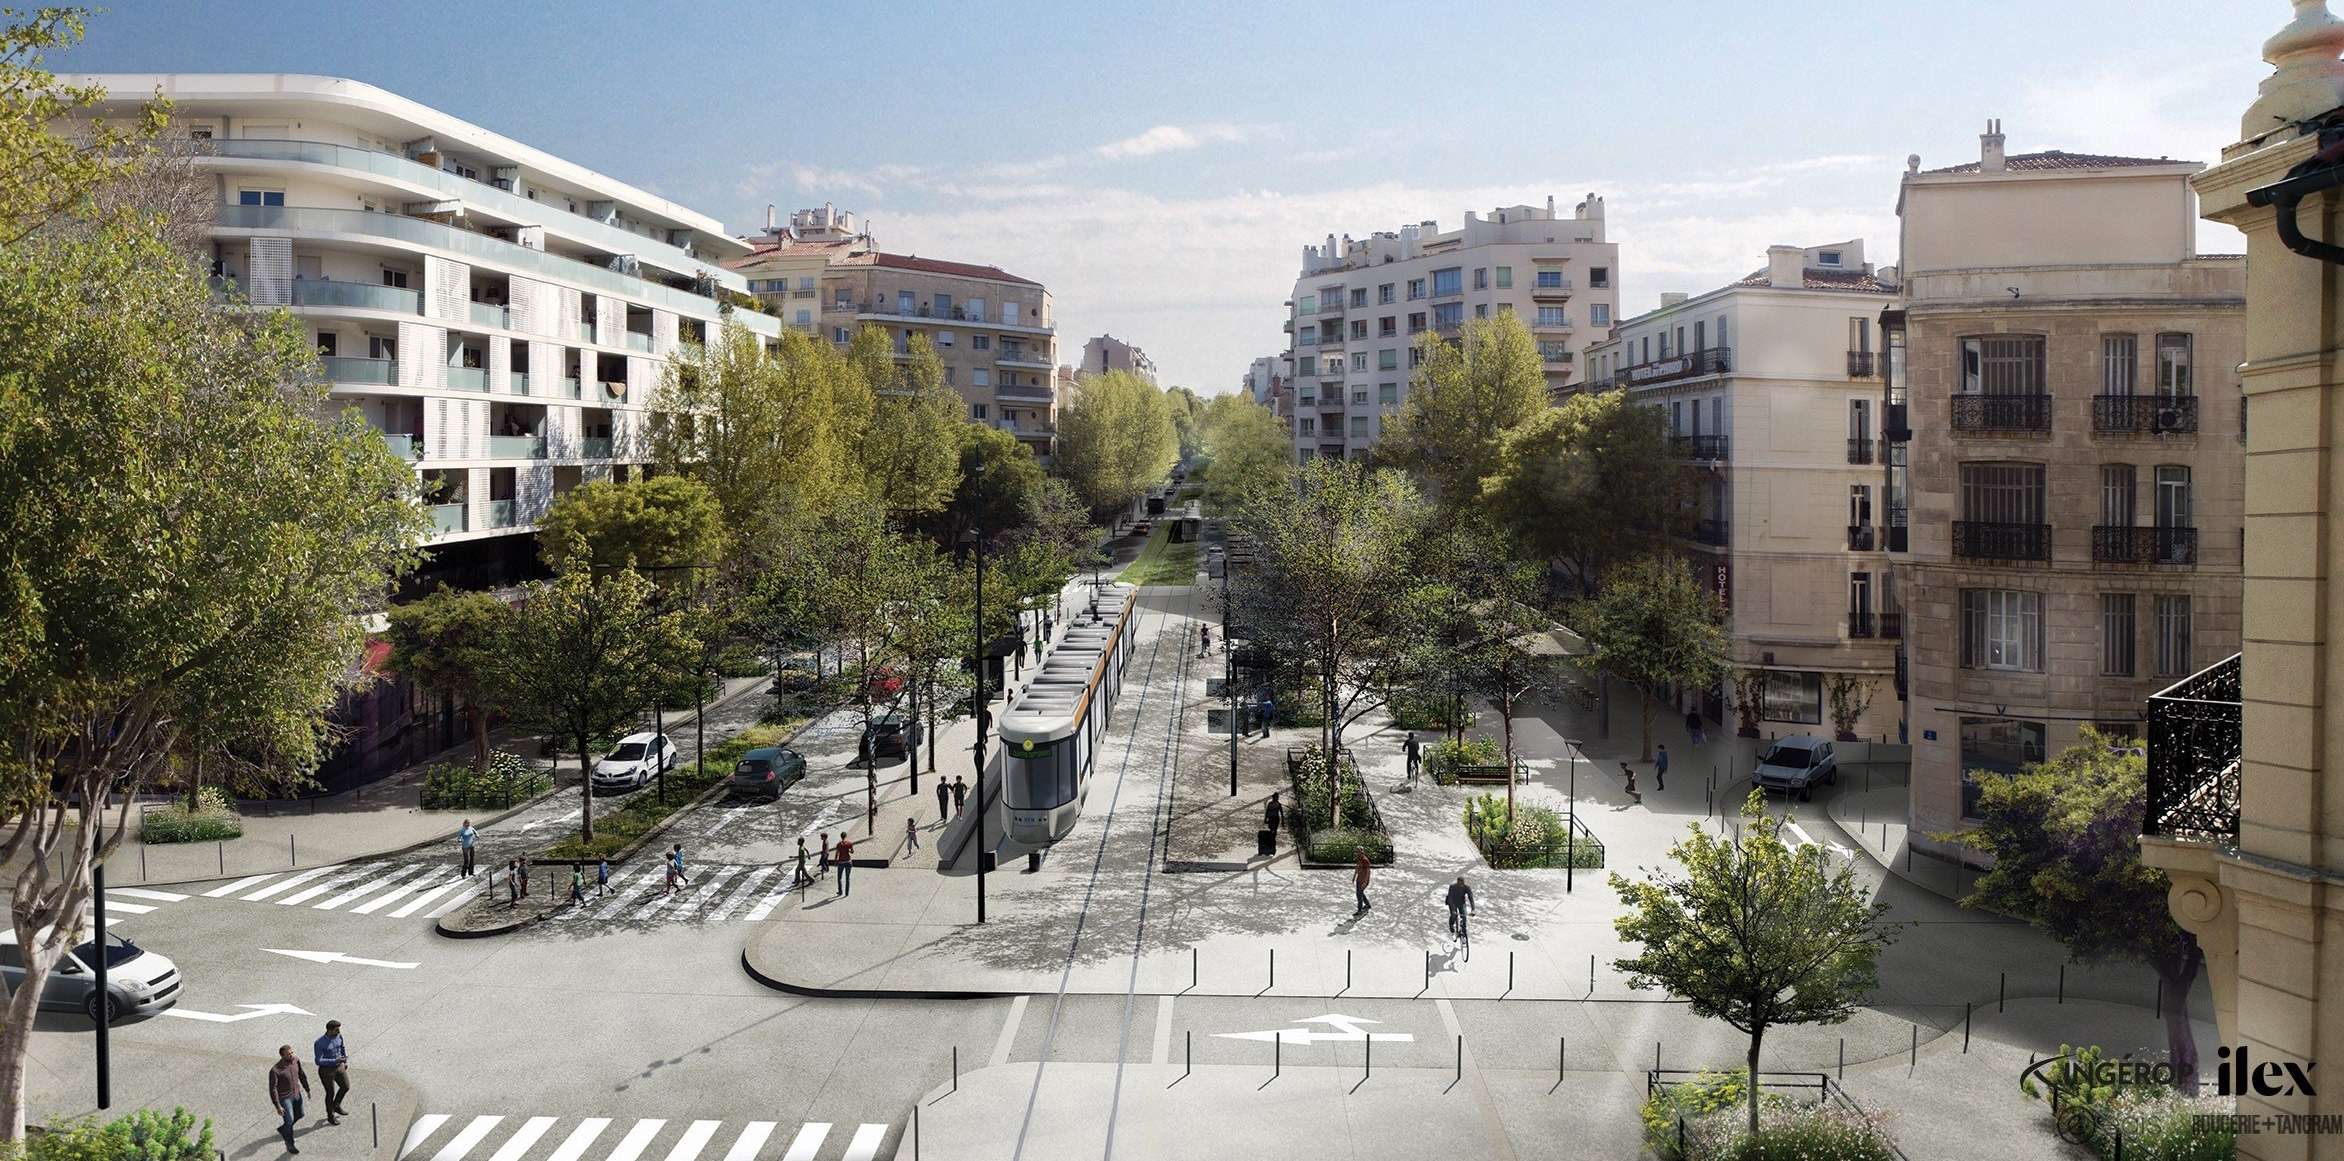   Extension du réseau de tramway de Marseille de la rue de Rome à la place du Quatre-Septembre